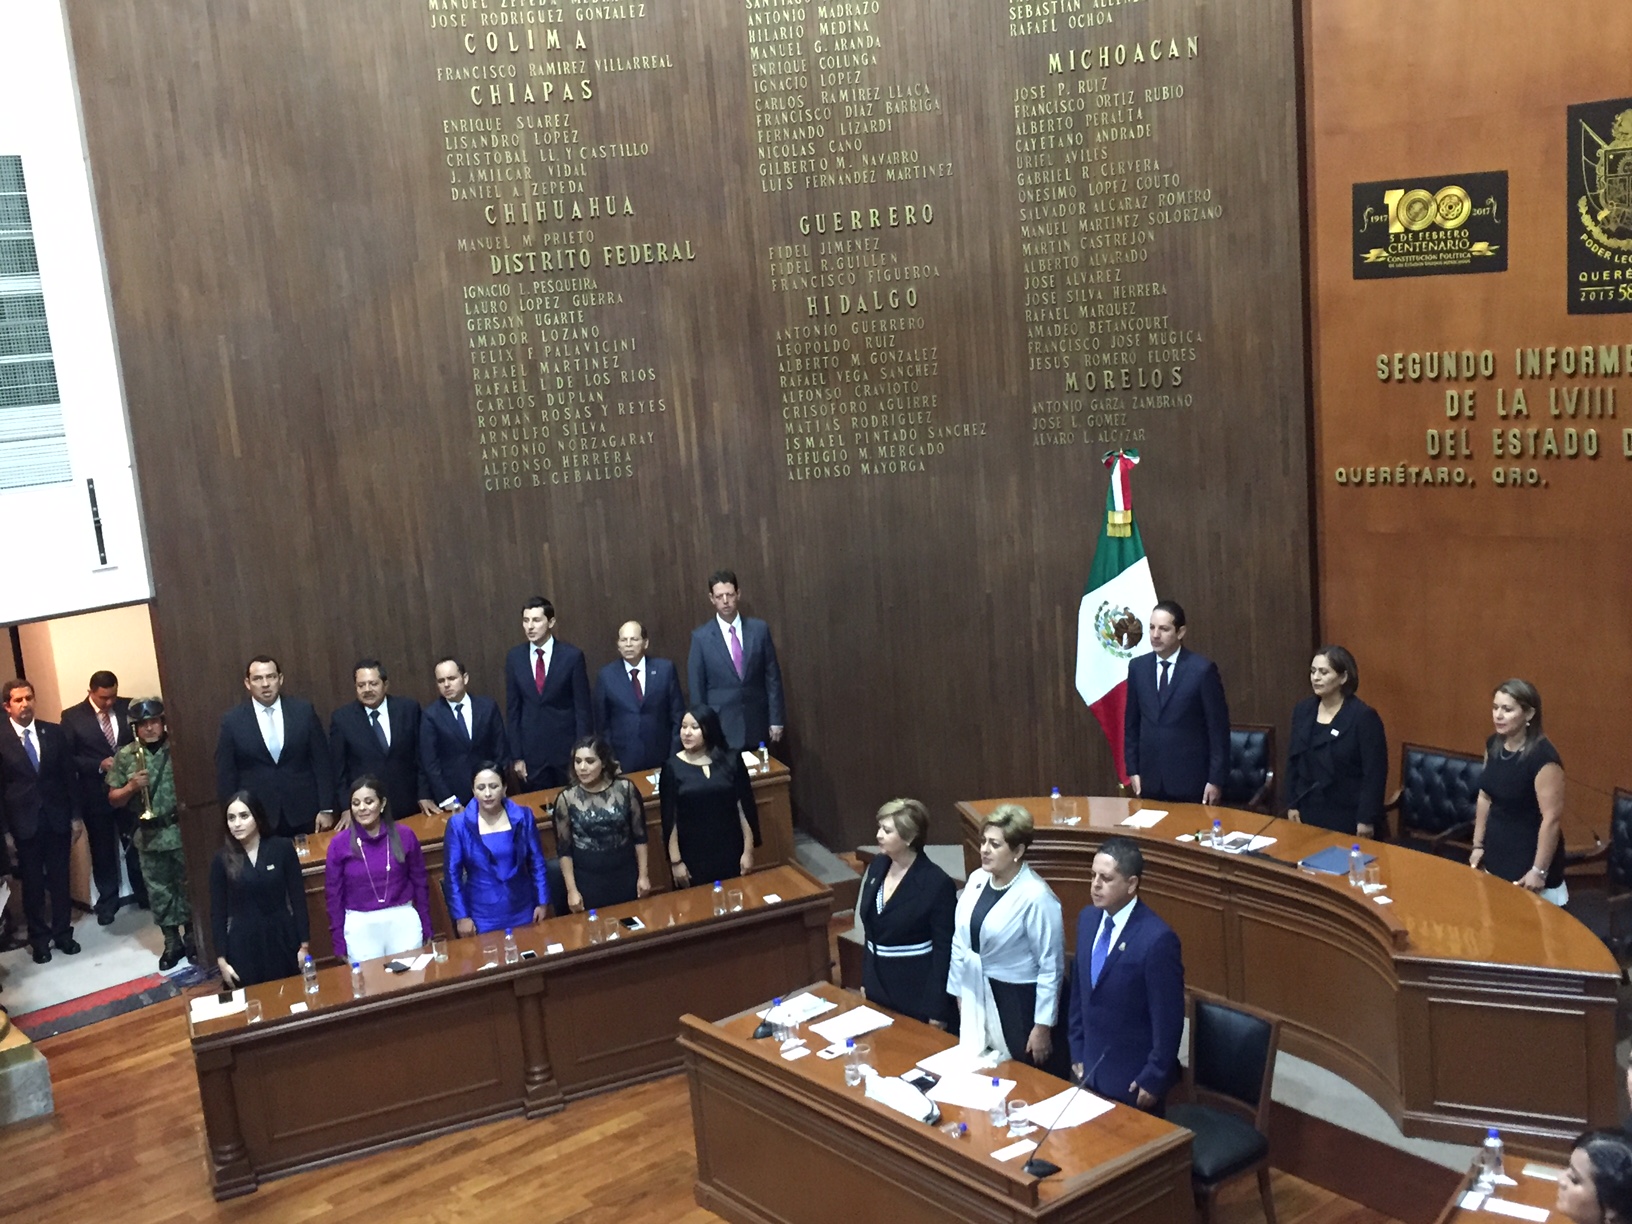  Destaca Carmelita Zúñiga implementación del SEA como uno de los principales logros de la LVIII Legislatura